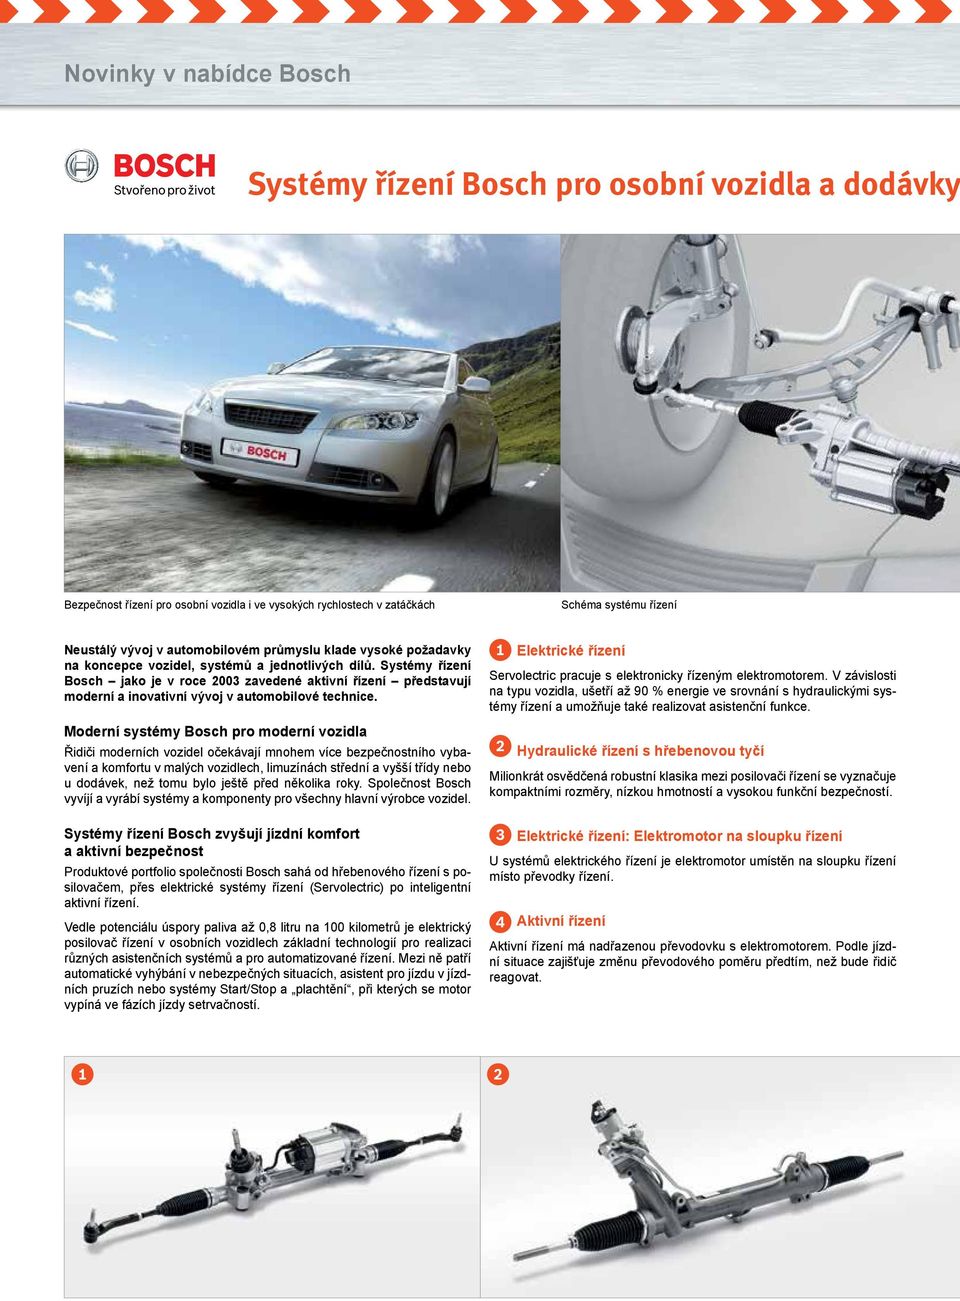 Systémy řízení Bosch jako je v roce 2003 zavedené aktivní řízení představují moderní a inovativní vývoj v automobilové technice.